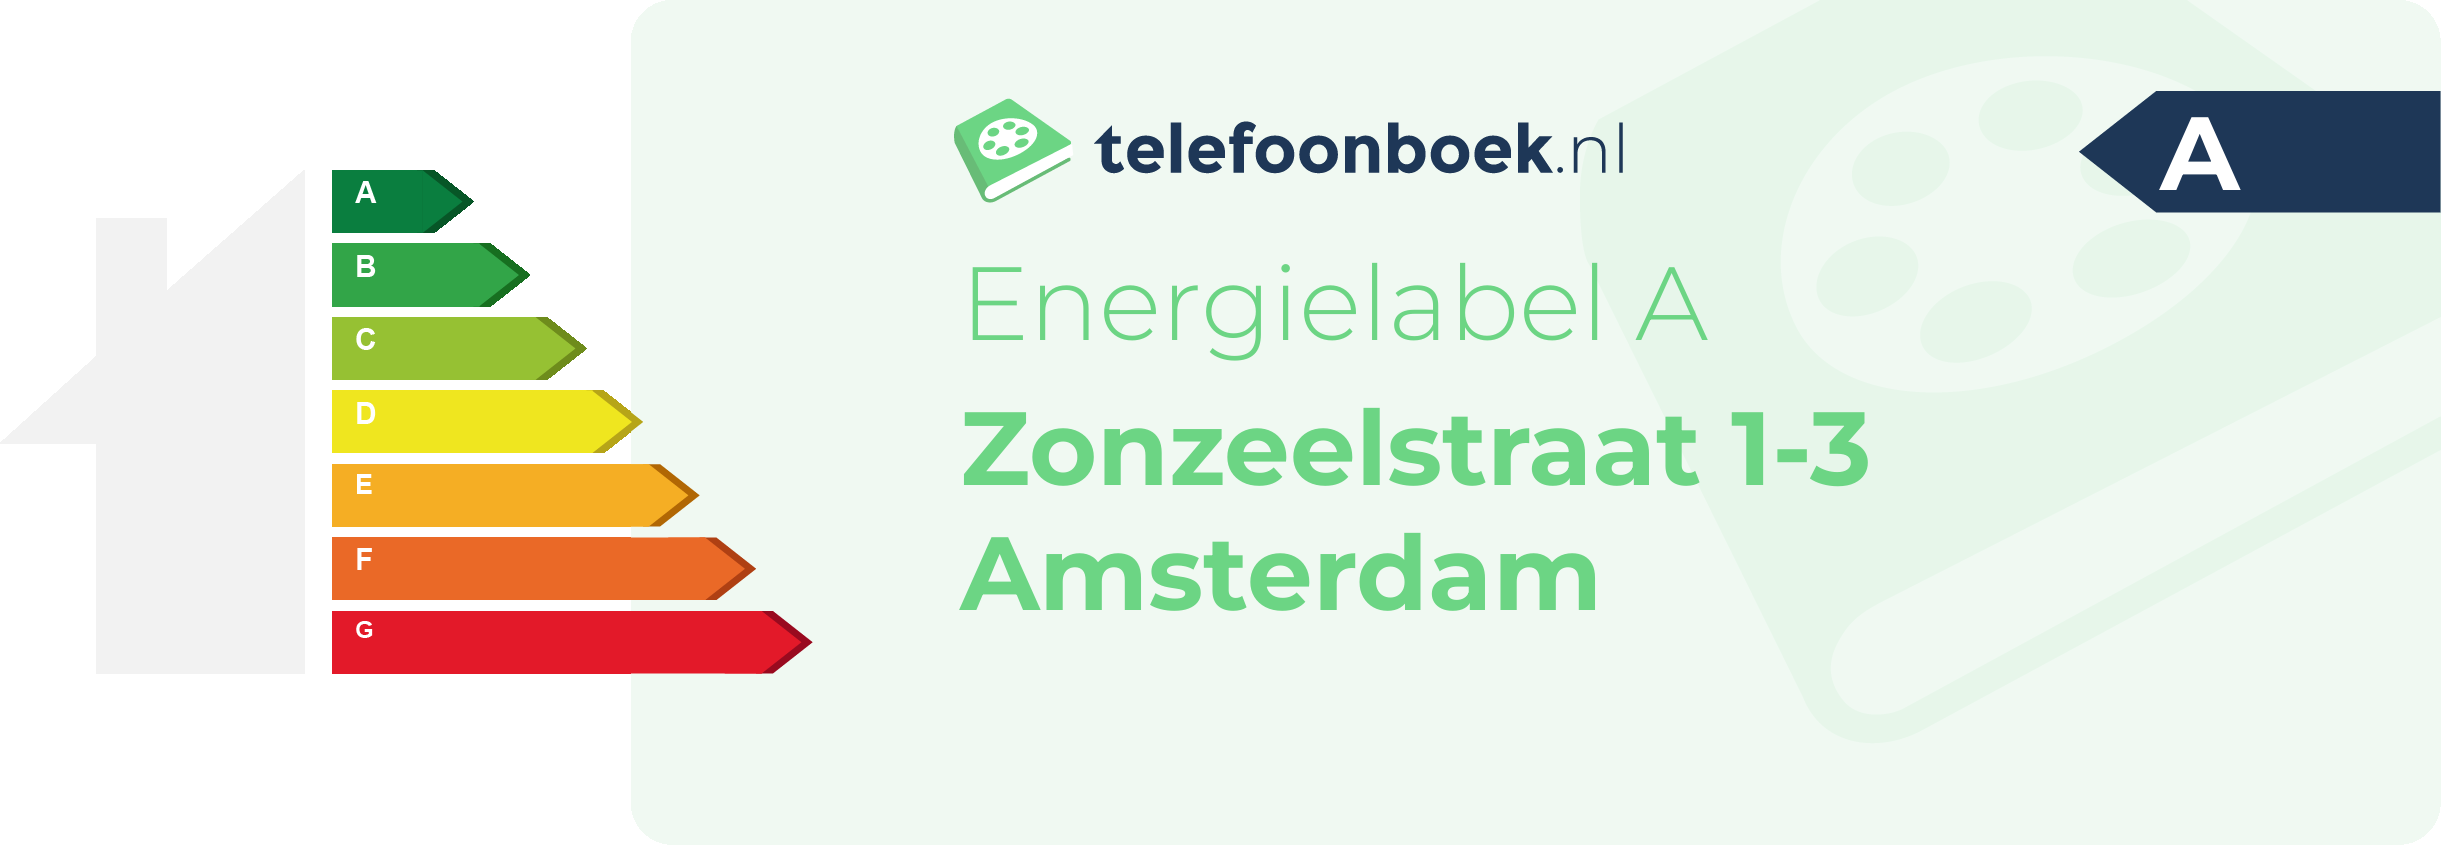 Energielabel Zonzeelstraat 1-3 Amsterdam